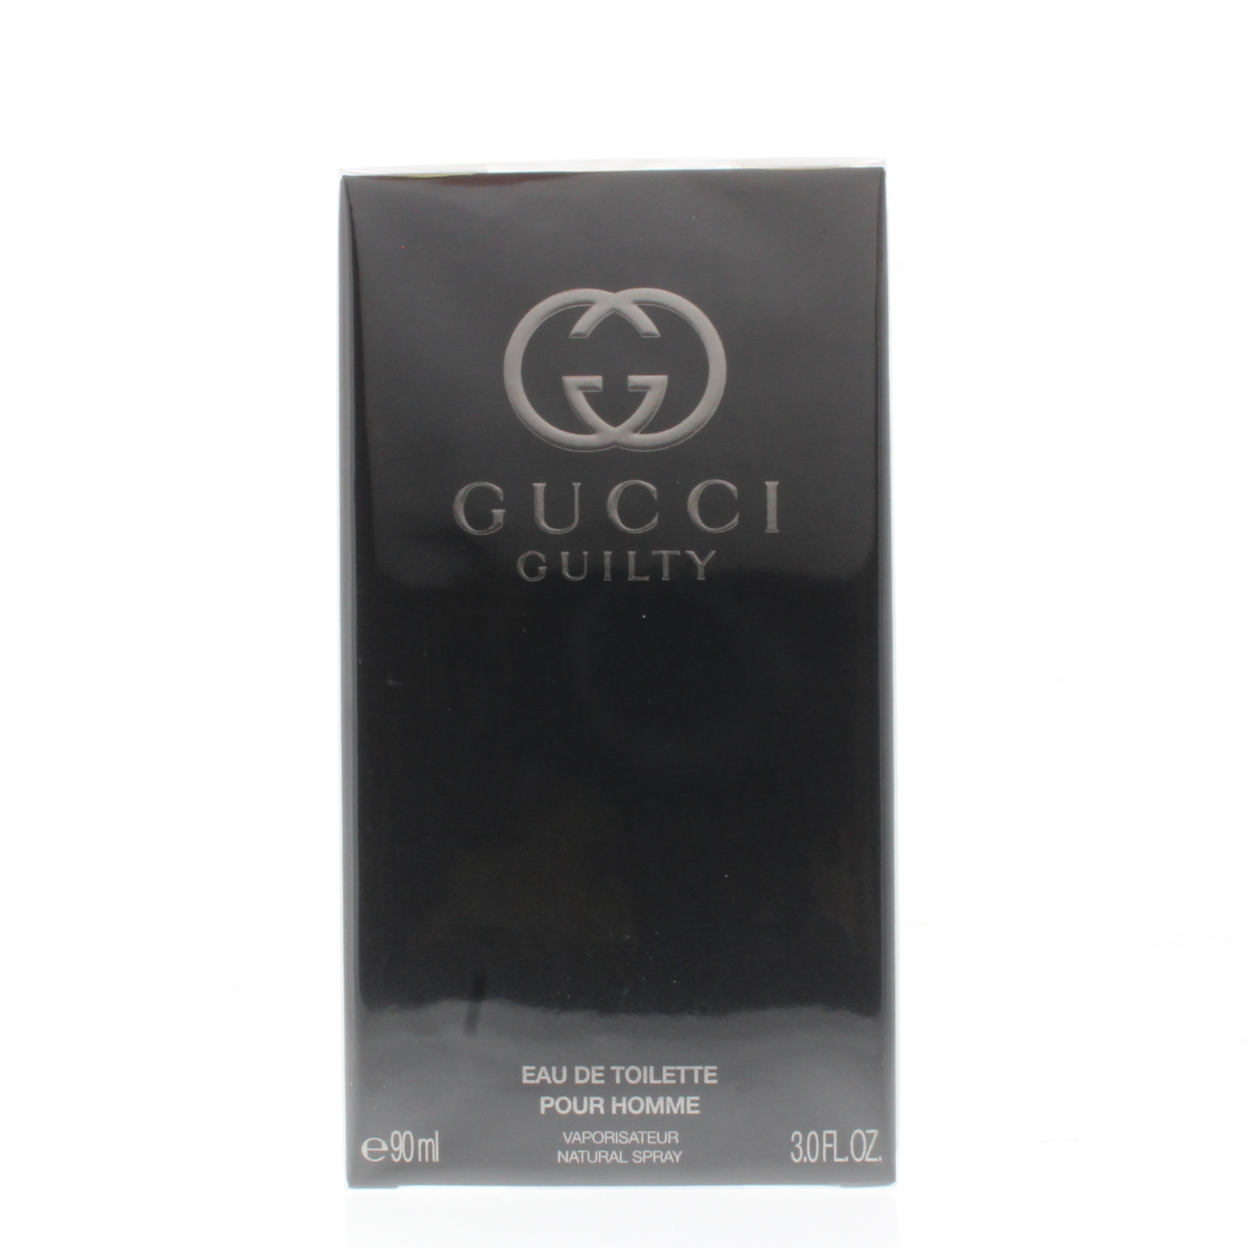 Gucci Guilty Pour Homme Eau De Toilette Spray, Cologne for Men, 3 oz - image 1 of 3